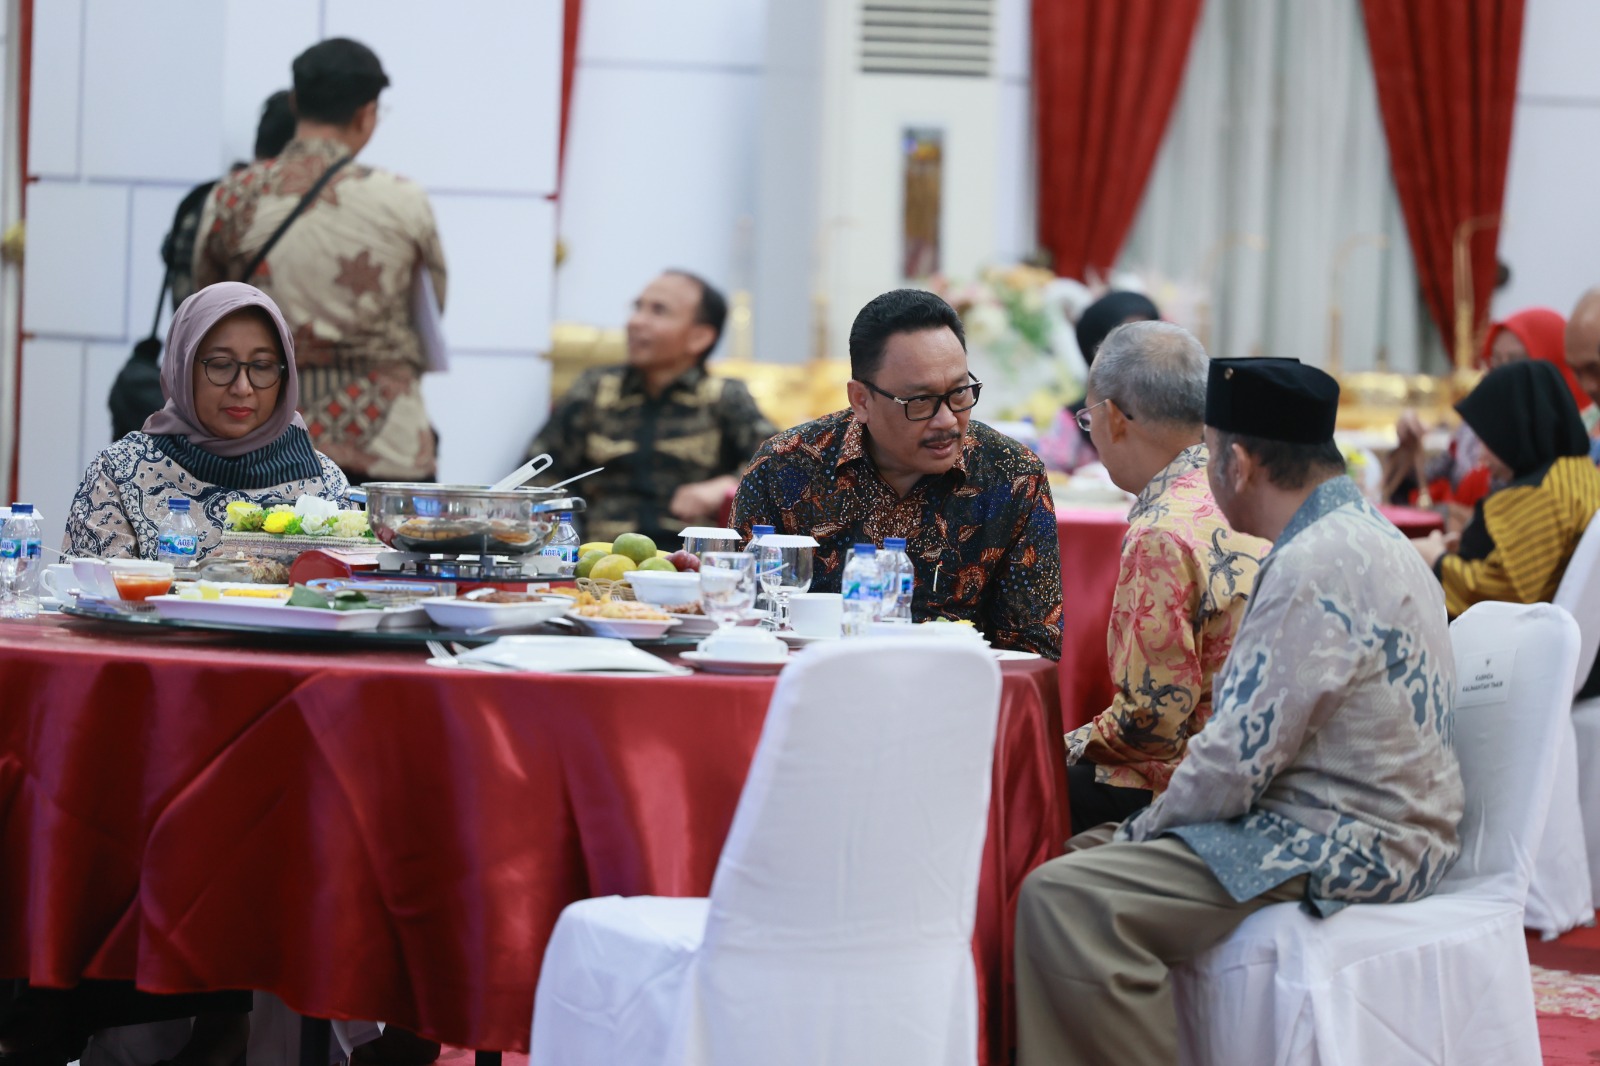 Plt. Kepala ANRI Beserta Jajaran Hadiri Welcome Dinner dari Pemprov Kalimantan Timur